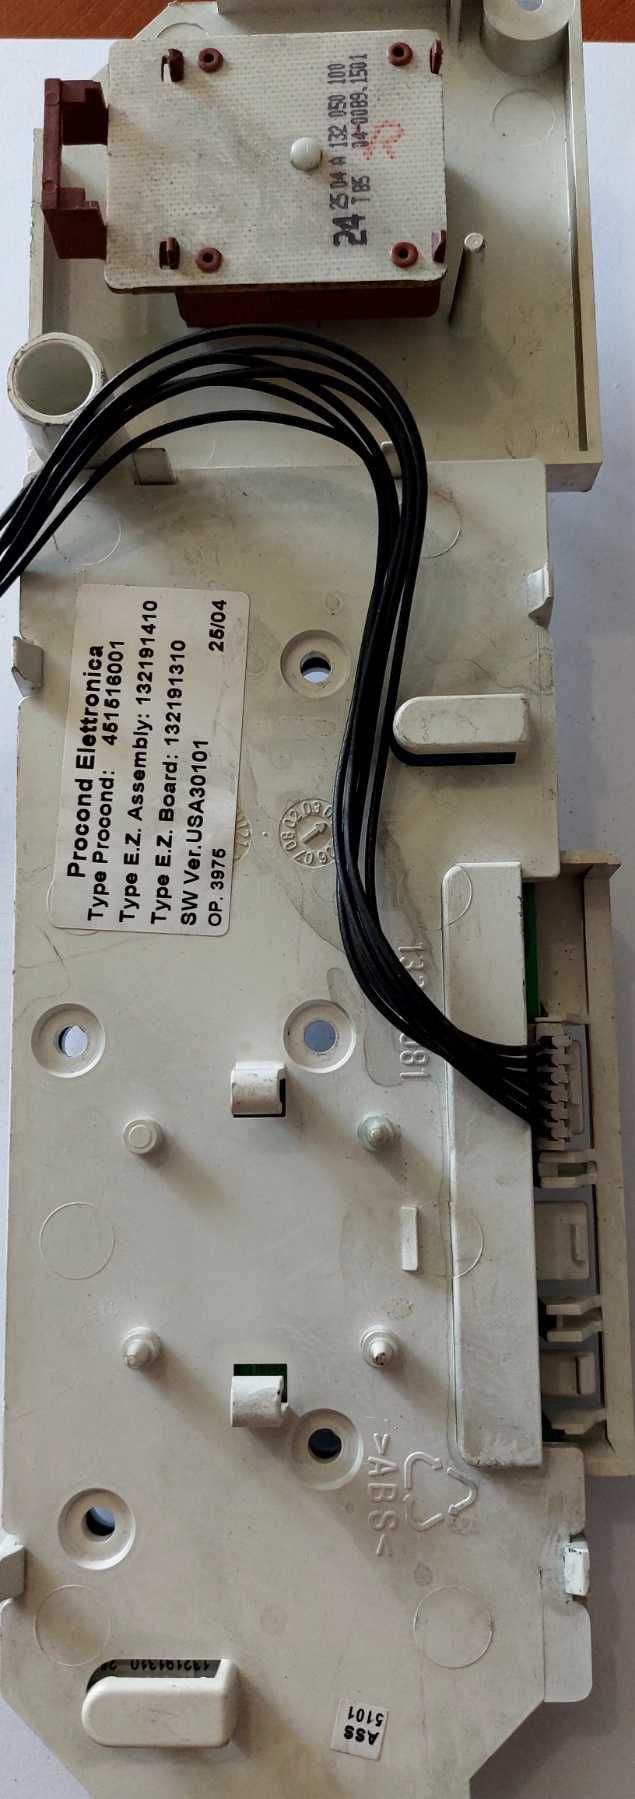 Модуль управления, плата код 132191410 стиральной машины Electrolux